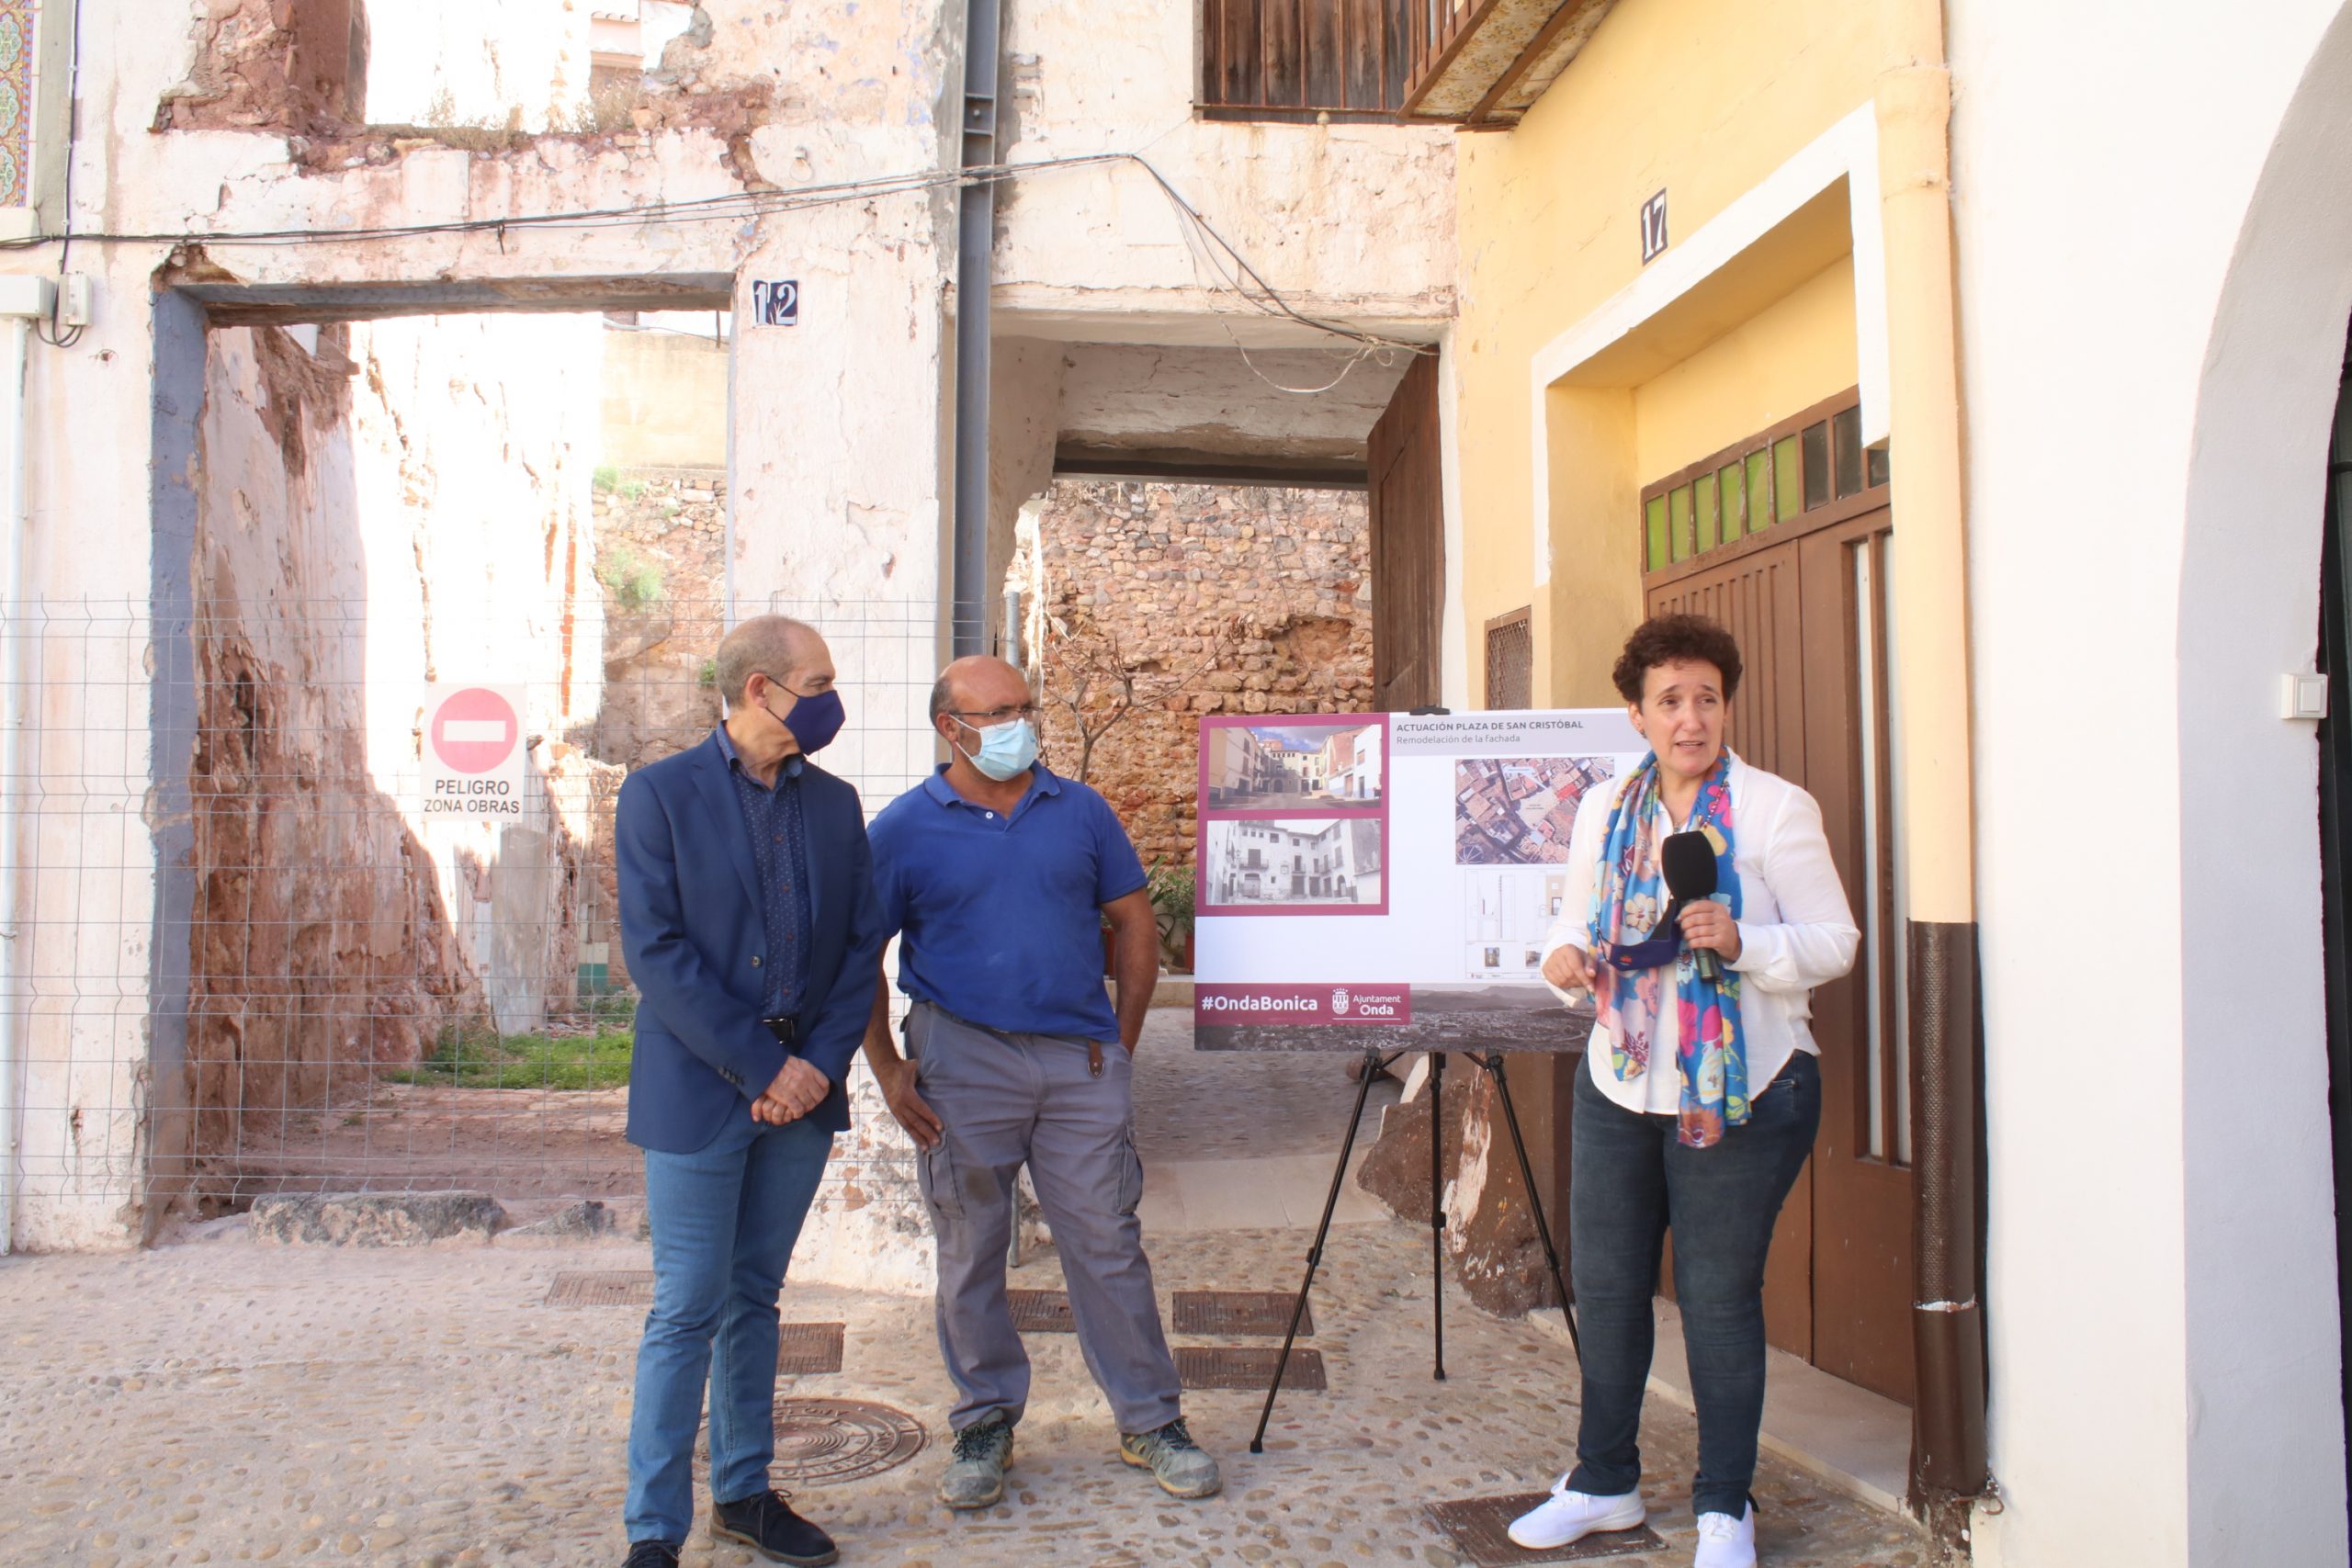 Onda Bonica reconstruye la fachada de la casa del casco histórico que se derrumbó en 2019